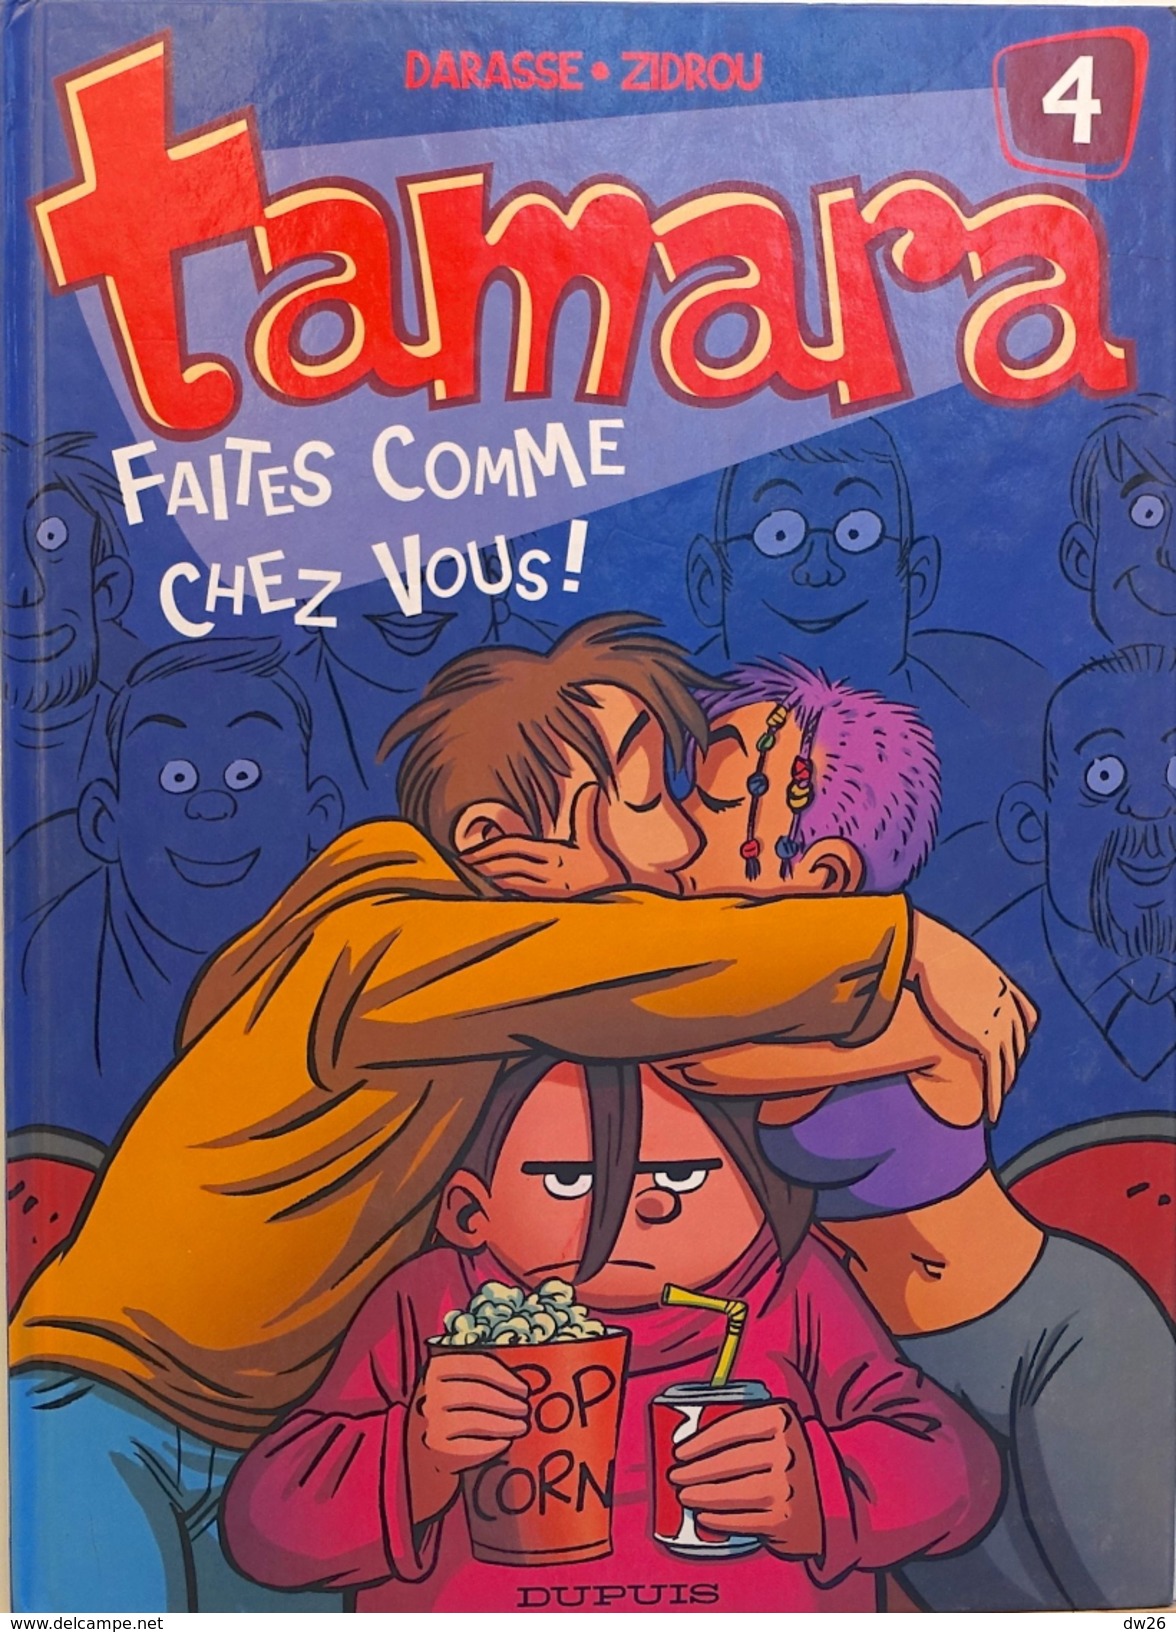 Lot de 7 BD: Tamara n° 4,5 - Les Kids - Gai-Luron (Gotlib) - Malika - Titeuf - Sourire d'Enfer